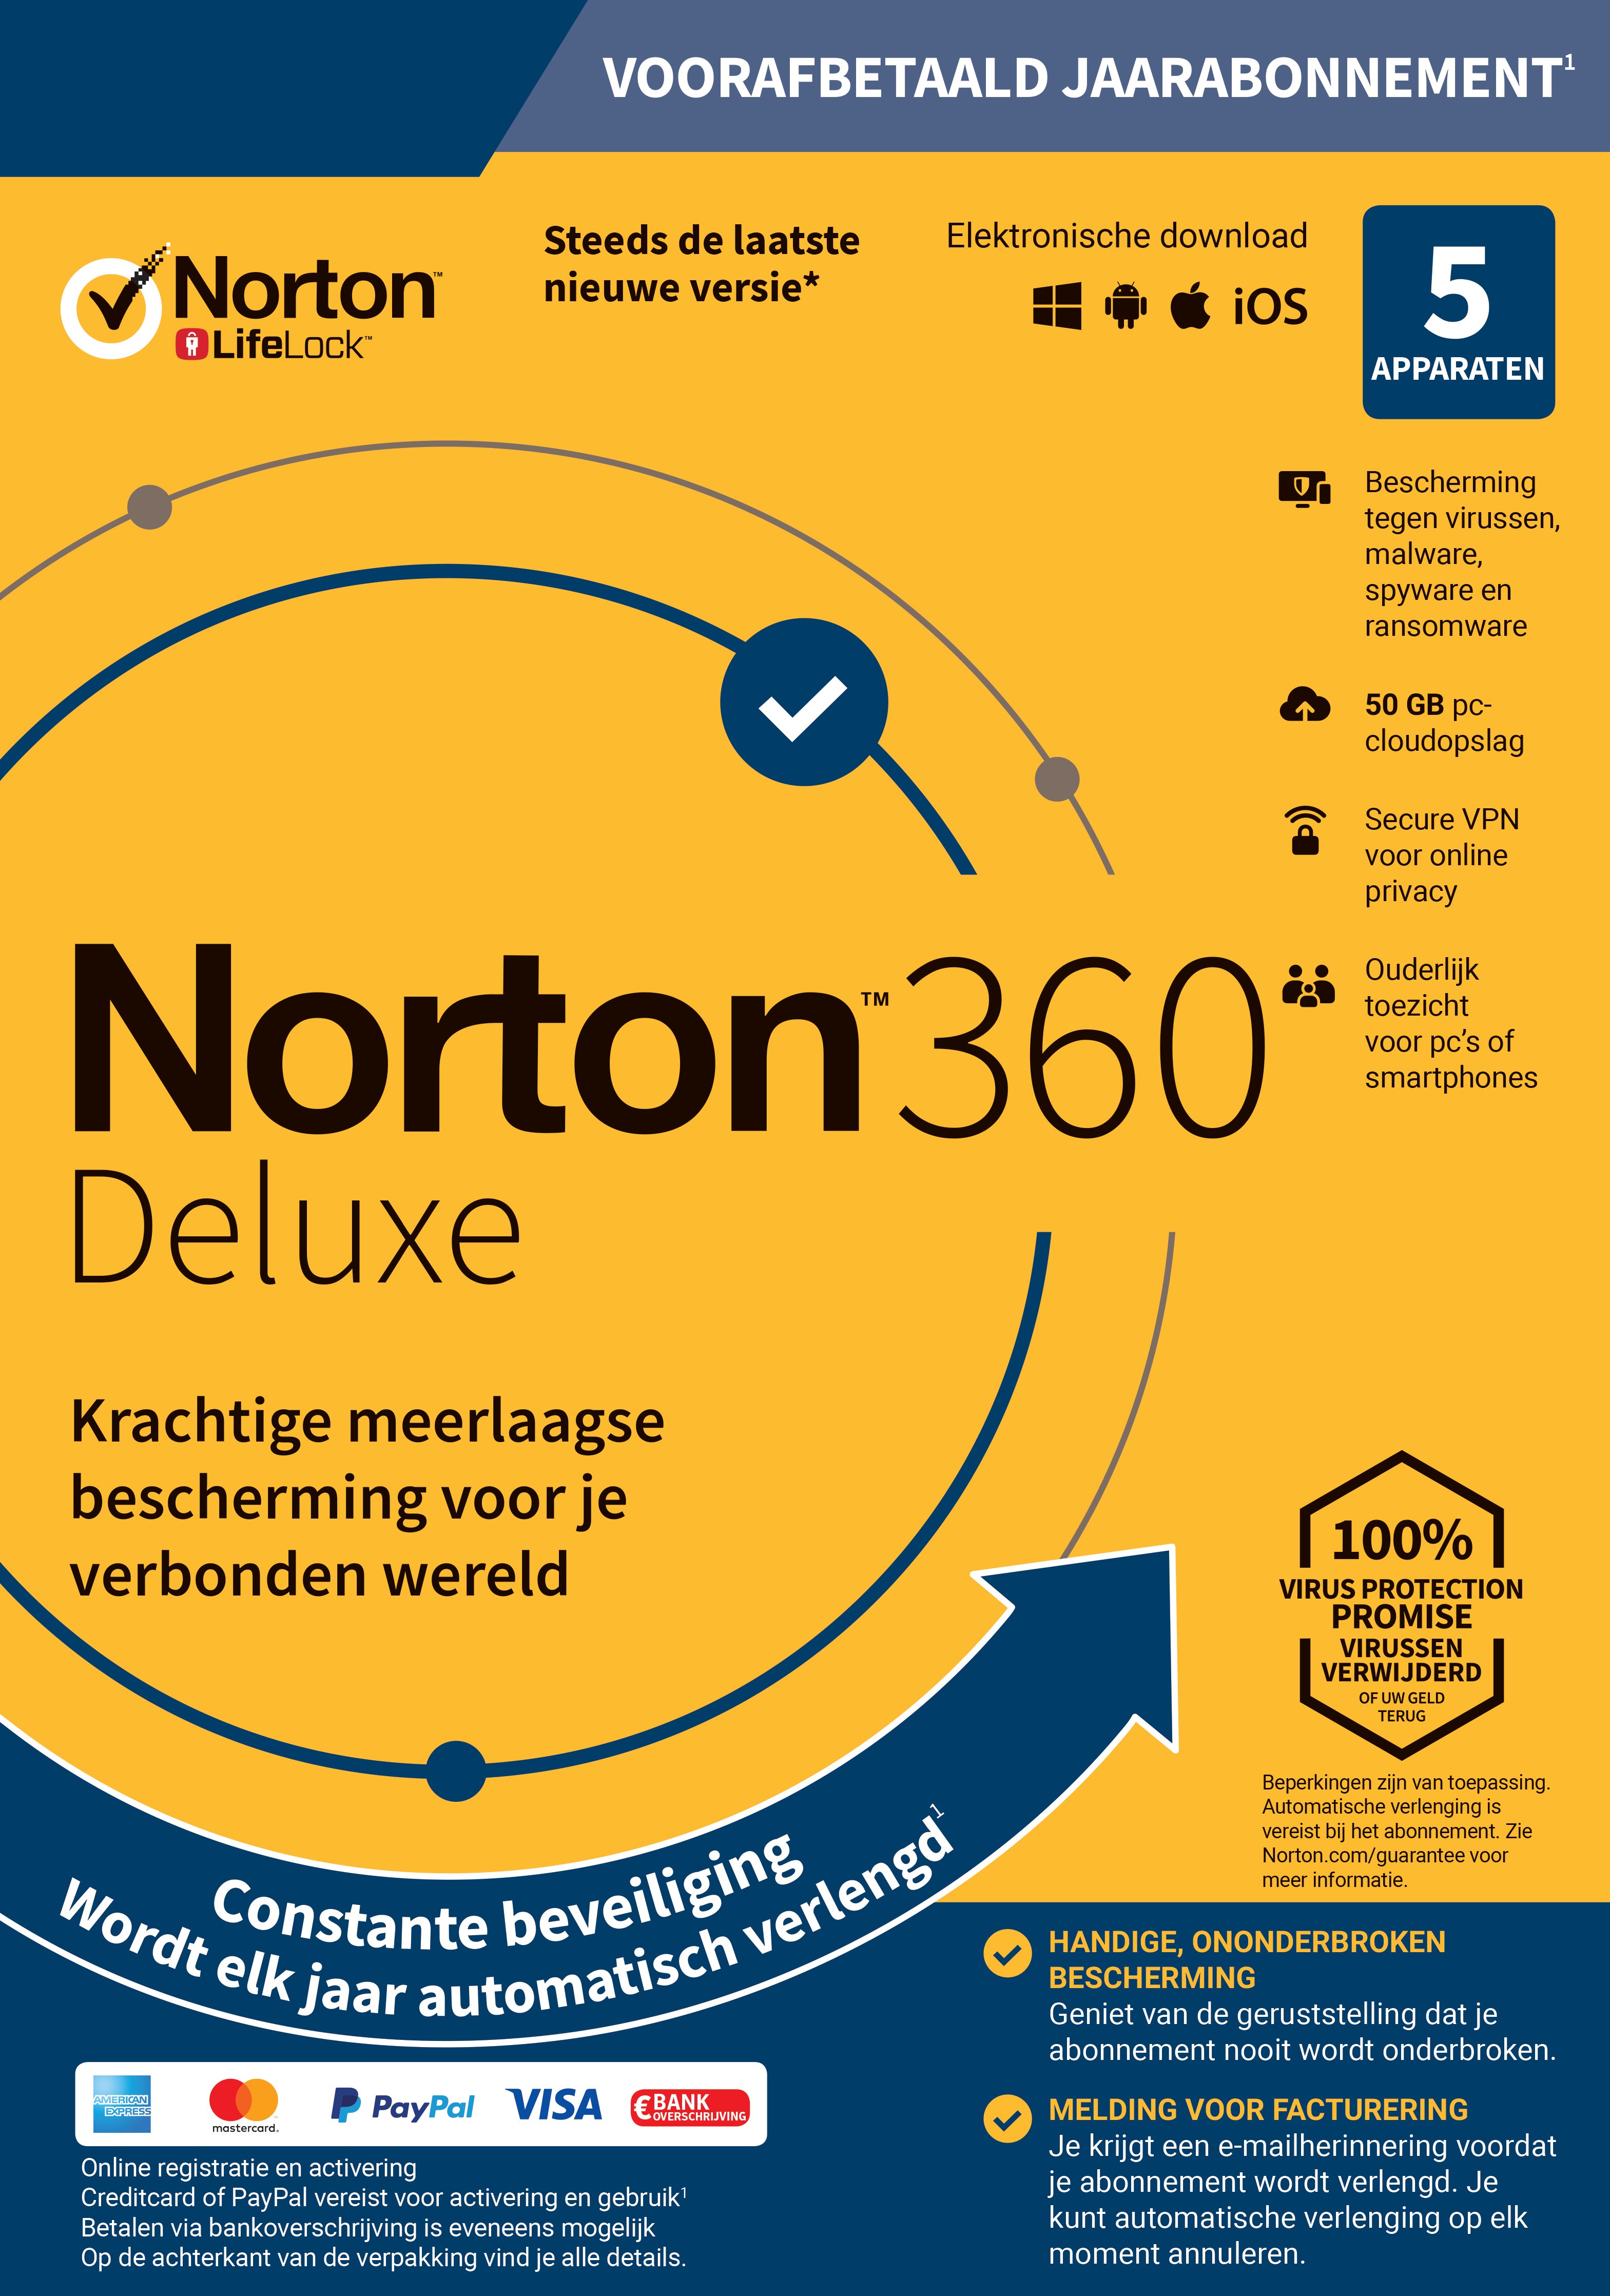 Norton 360 Deluxe 5 devices  USA region